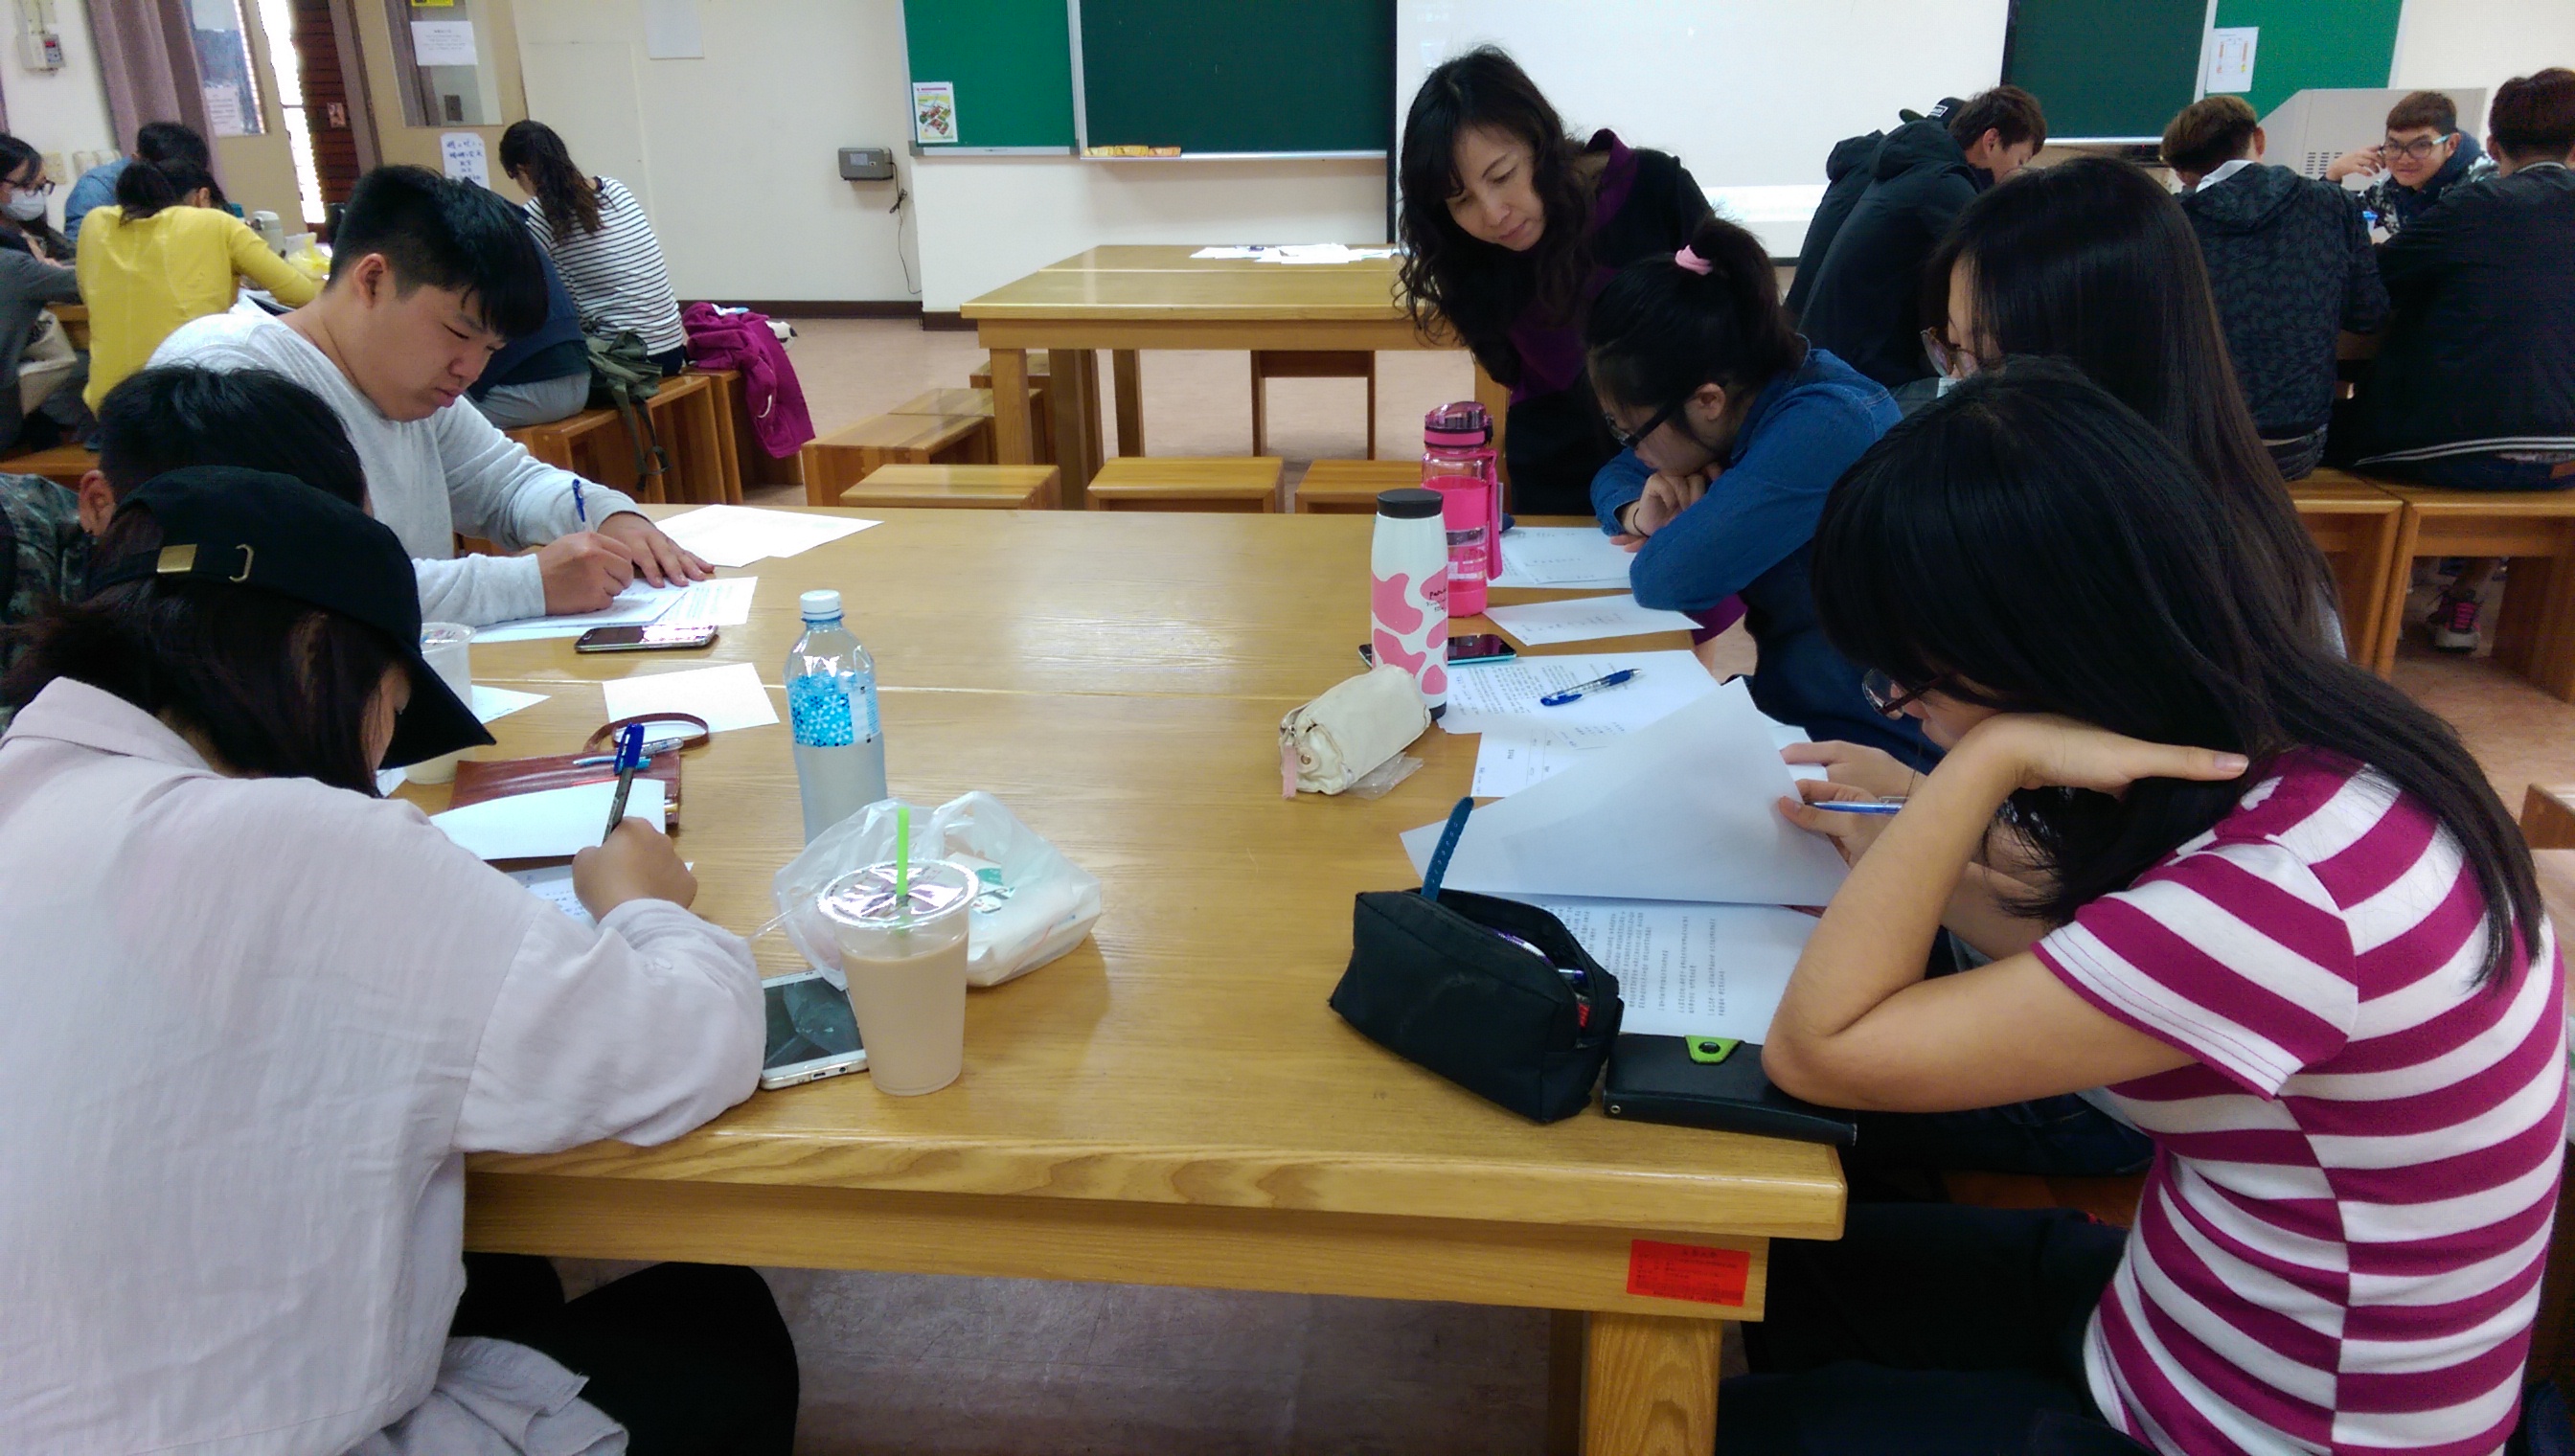 課程型計畫-長榮大學通識教育中心林乃慧助理教授進行生涯輔導課程